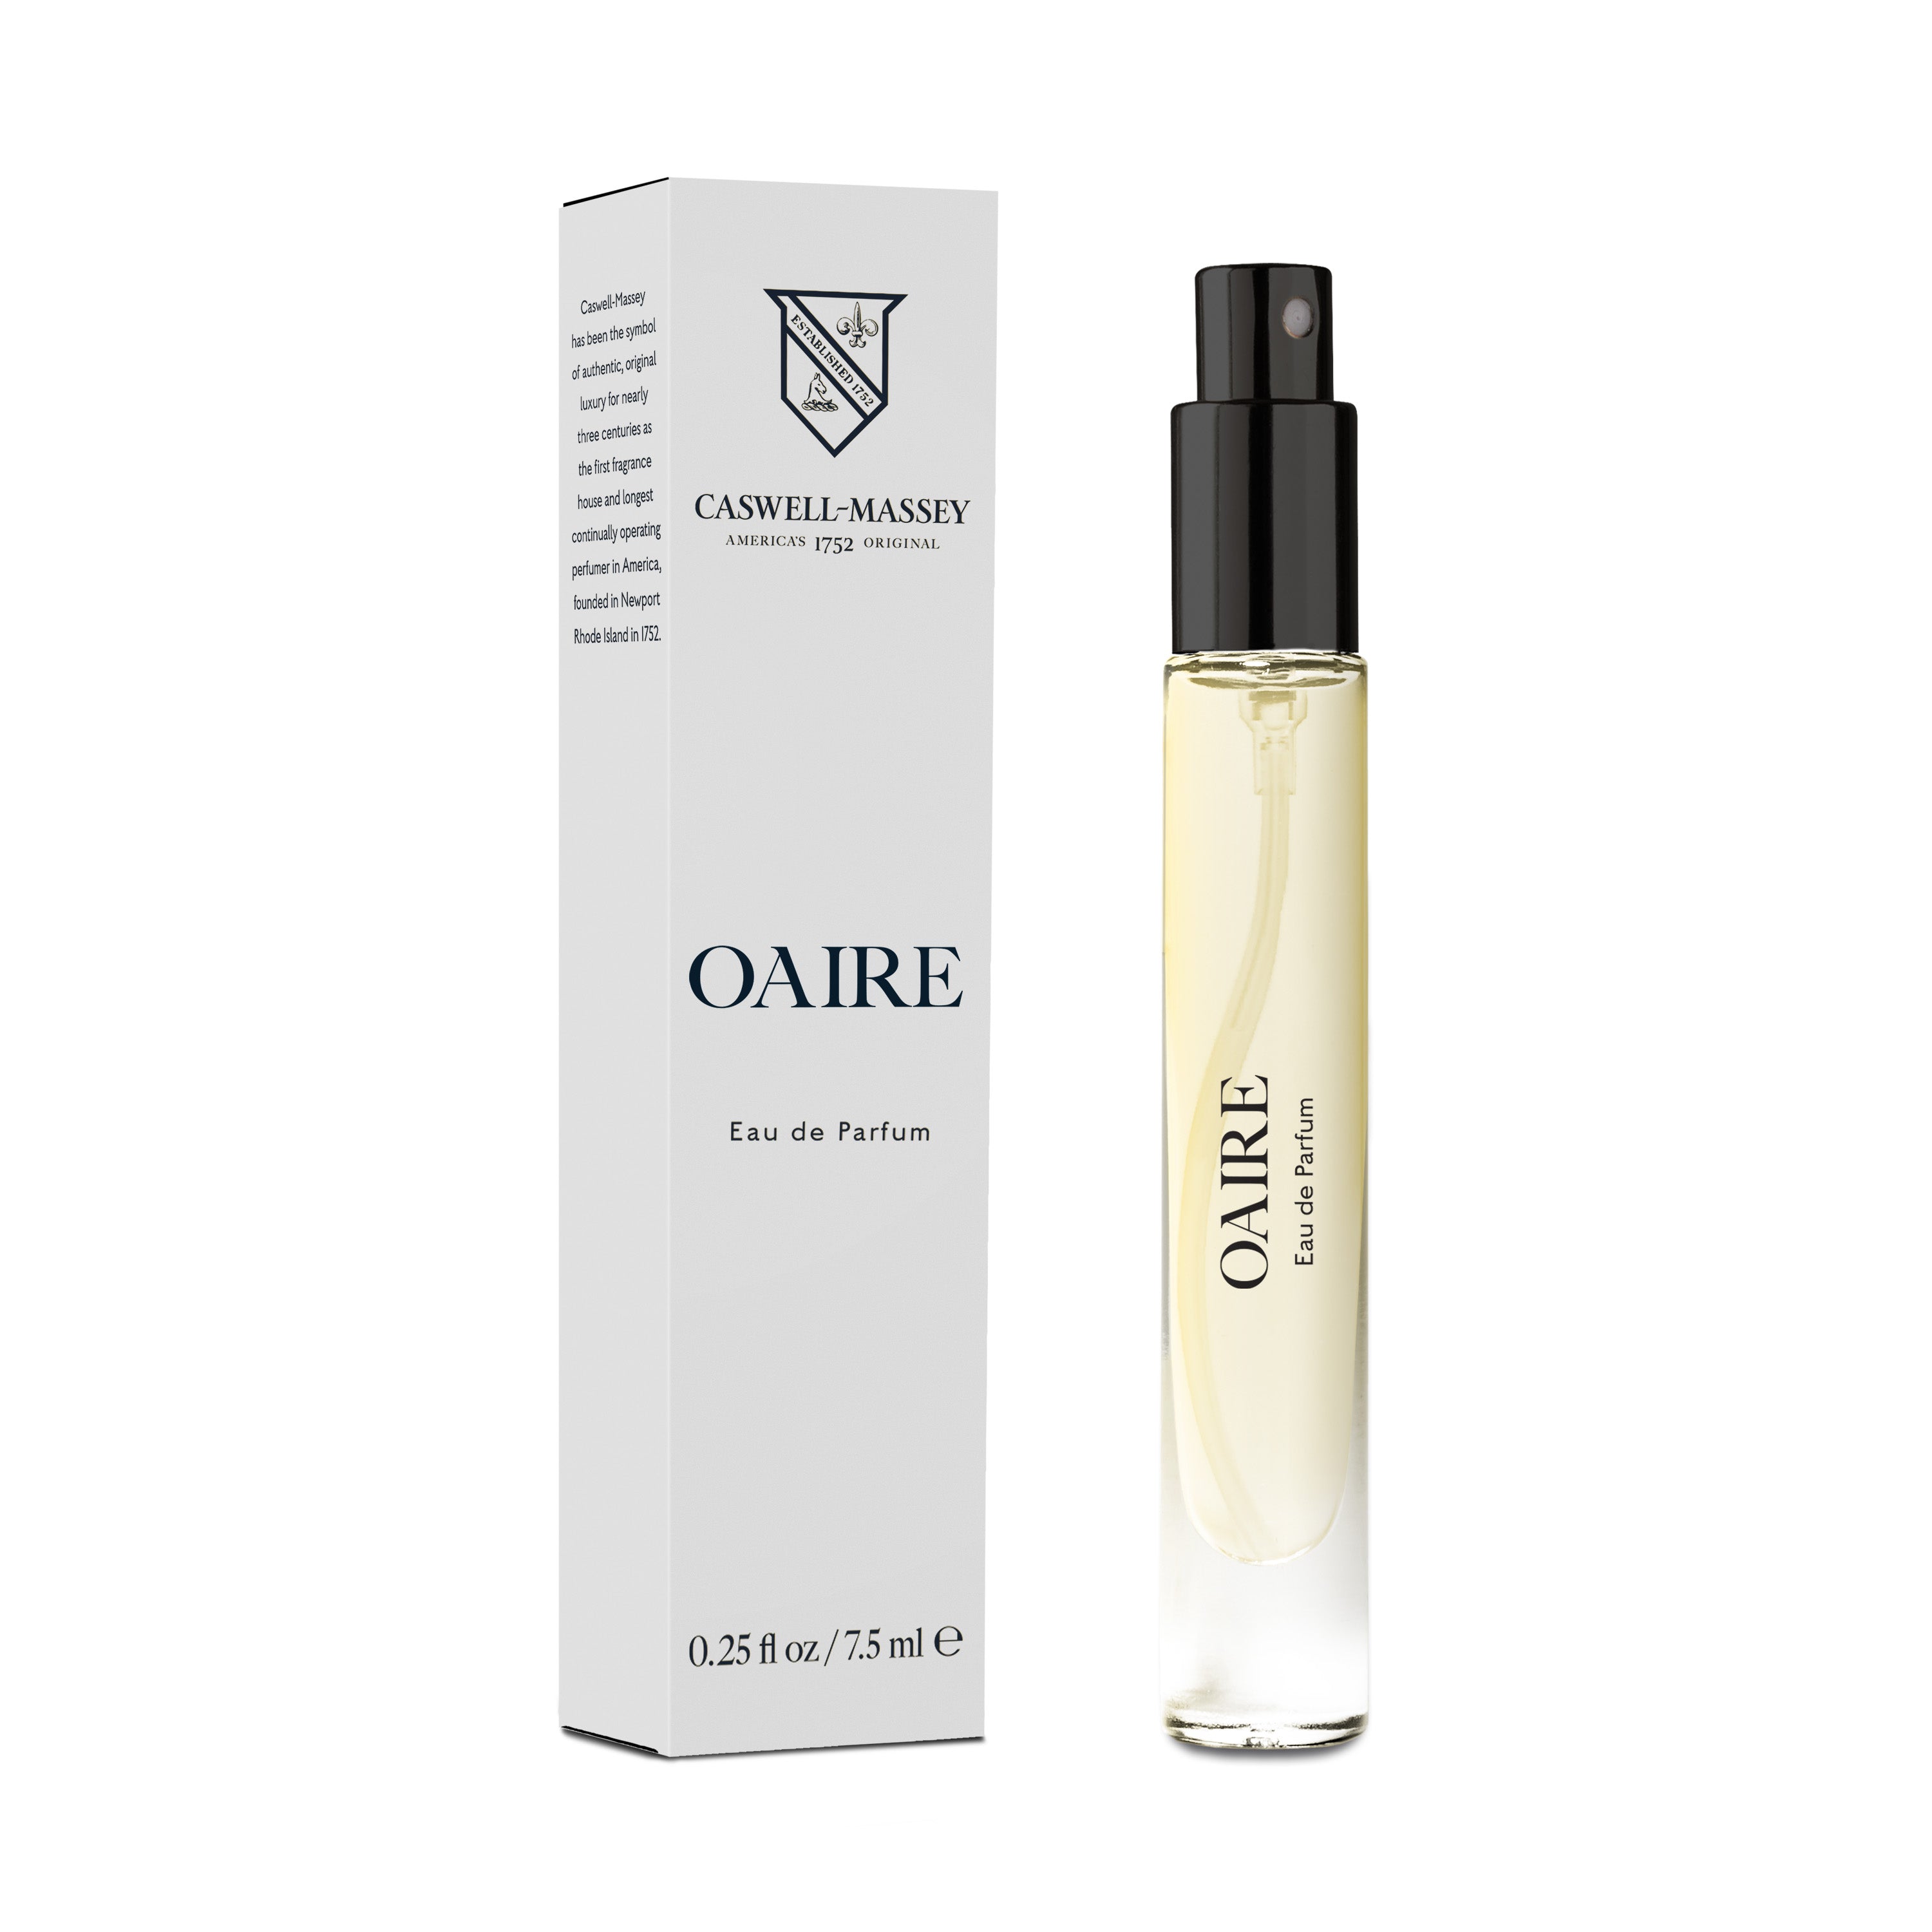 Eternal Love X-Louis Eau De Parfum For Men 100 ml, Wholesale